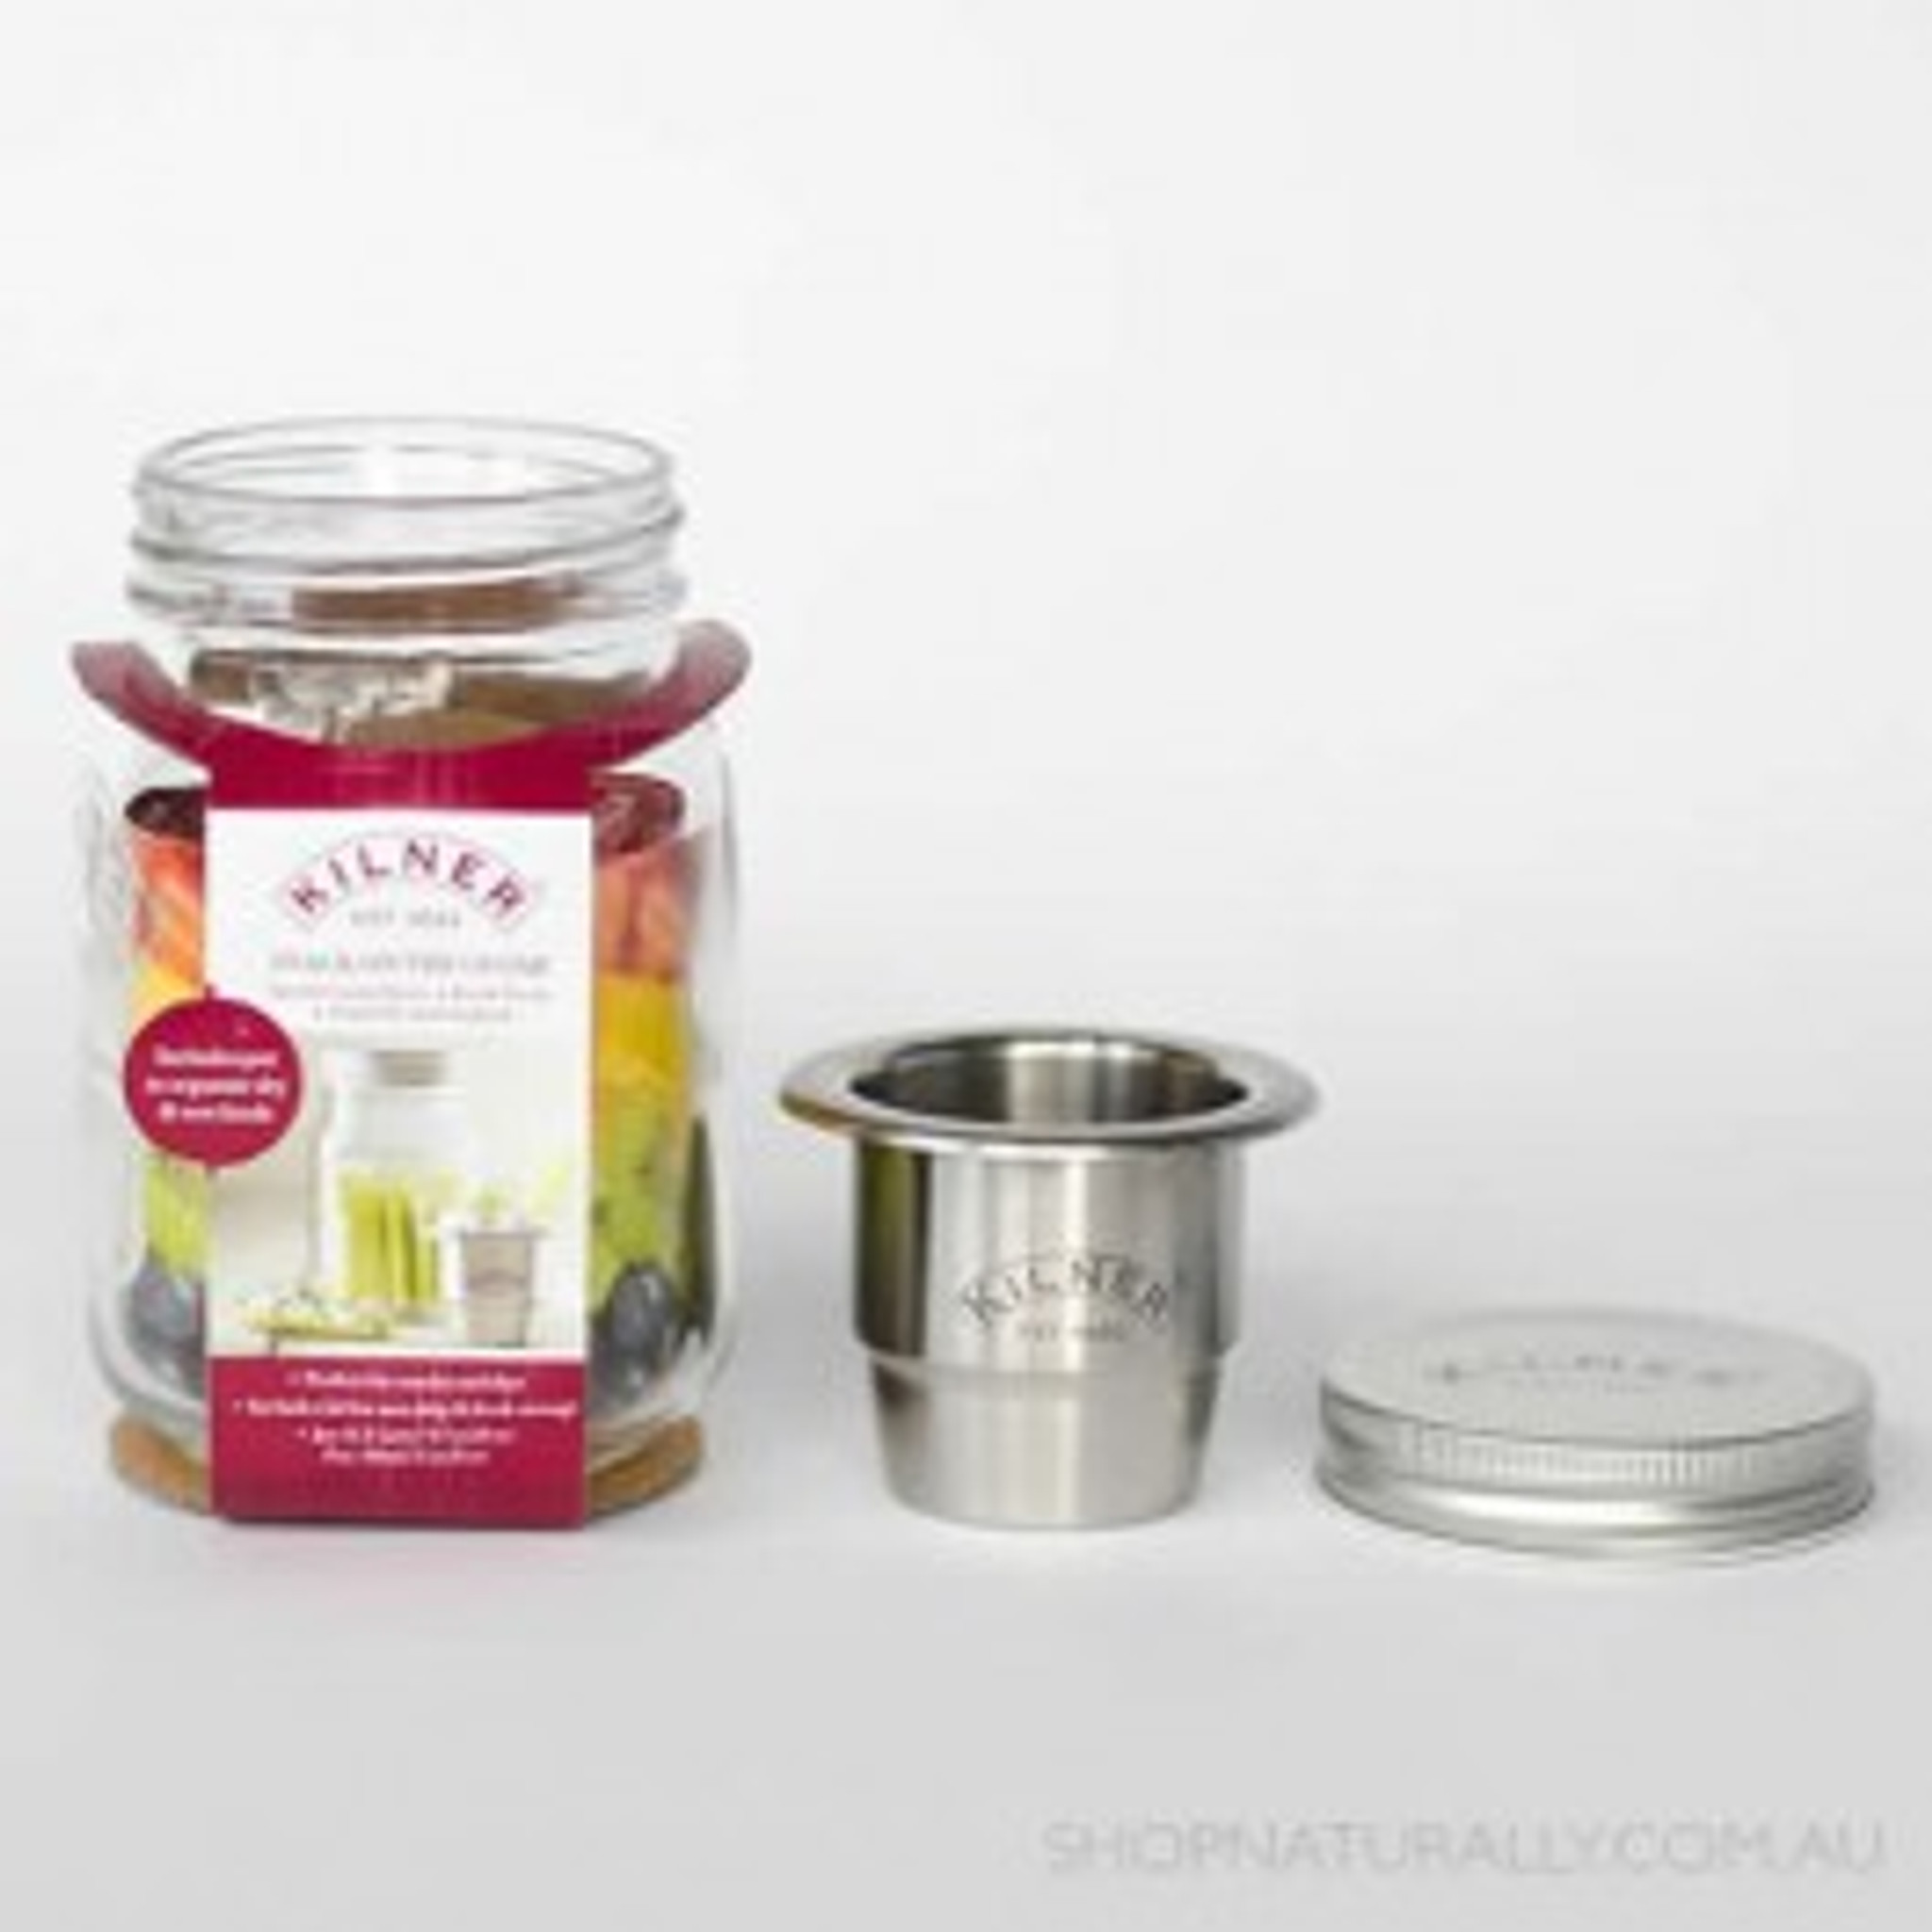 Kilner Snack Jars - Piccantino Online Shop International